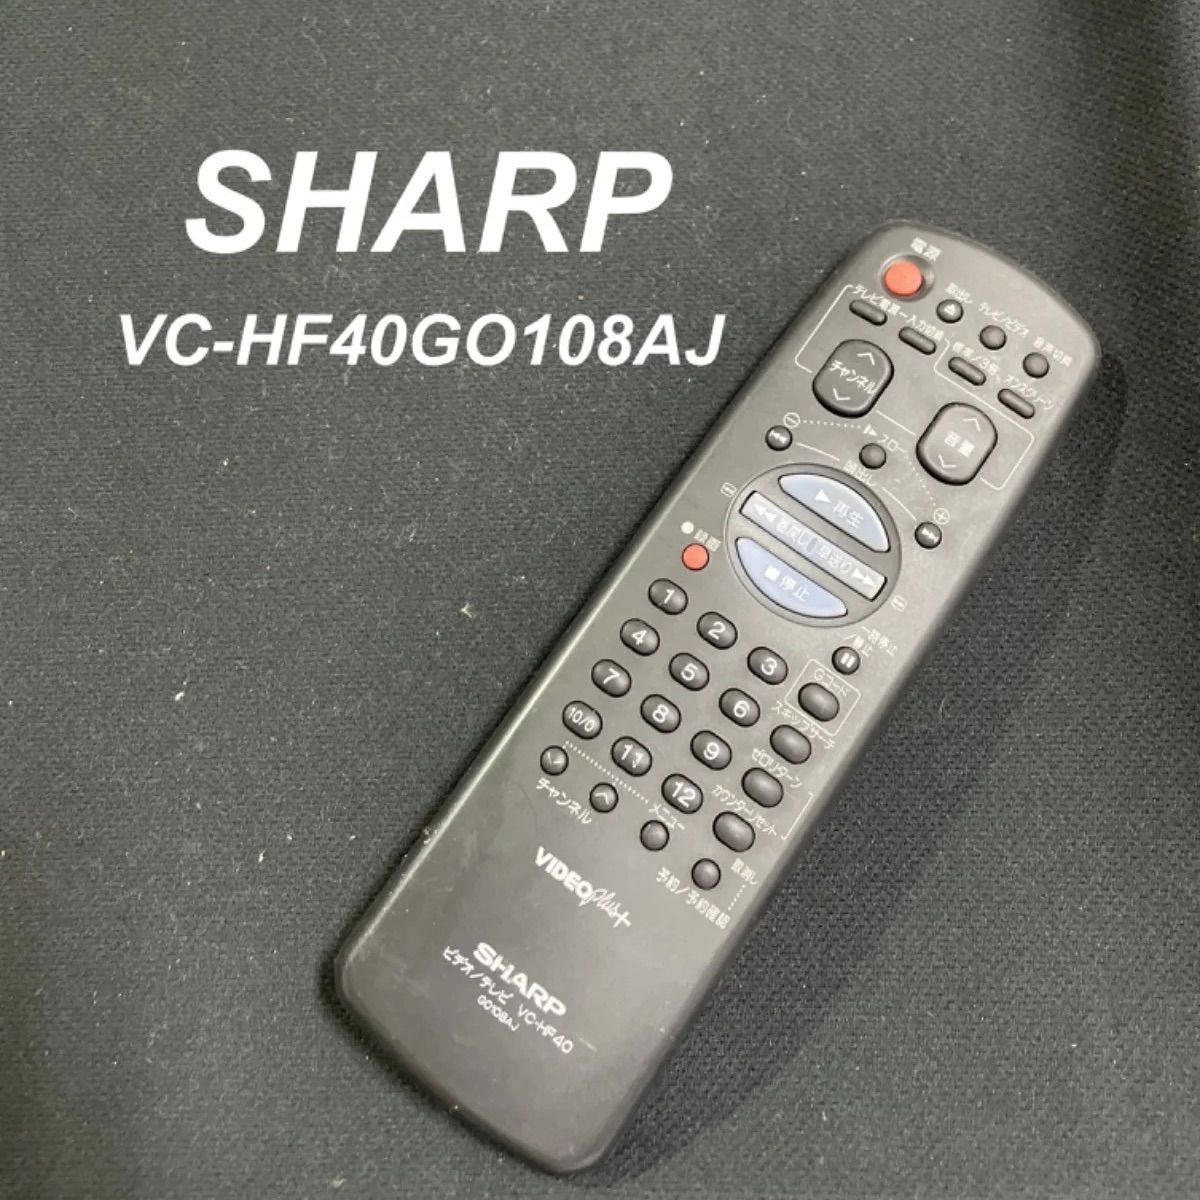 シャープ SHARP VC-HF40 GO108AJ リモコン ビデオ VHS テレビ 液晶 赤外線チェック済 清掃 除菌済み 中古 RC2661 -  メルカリ